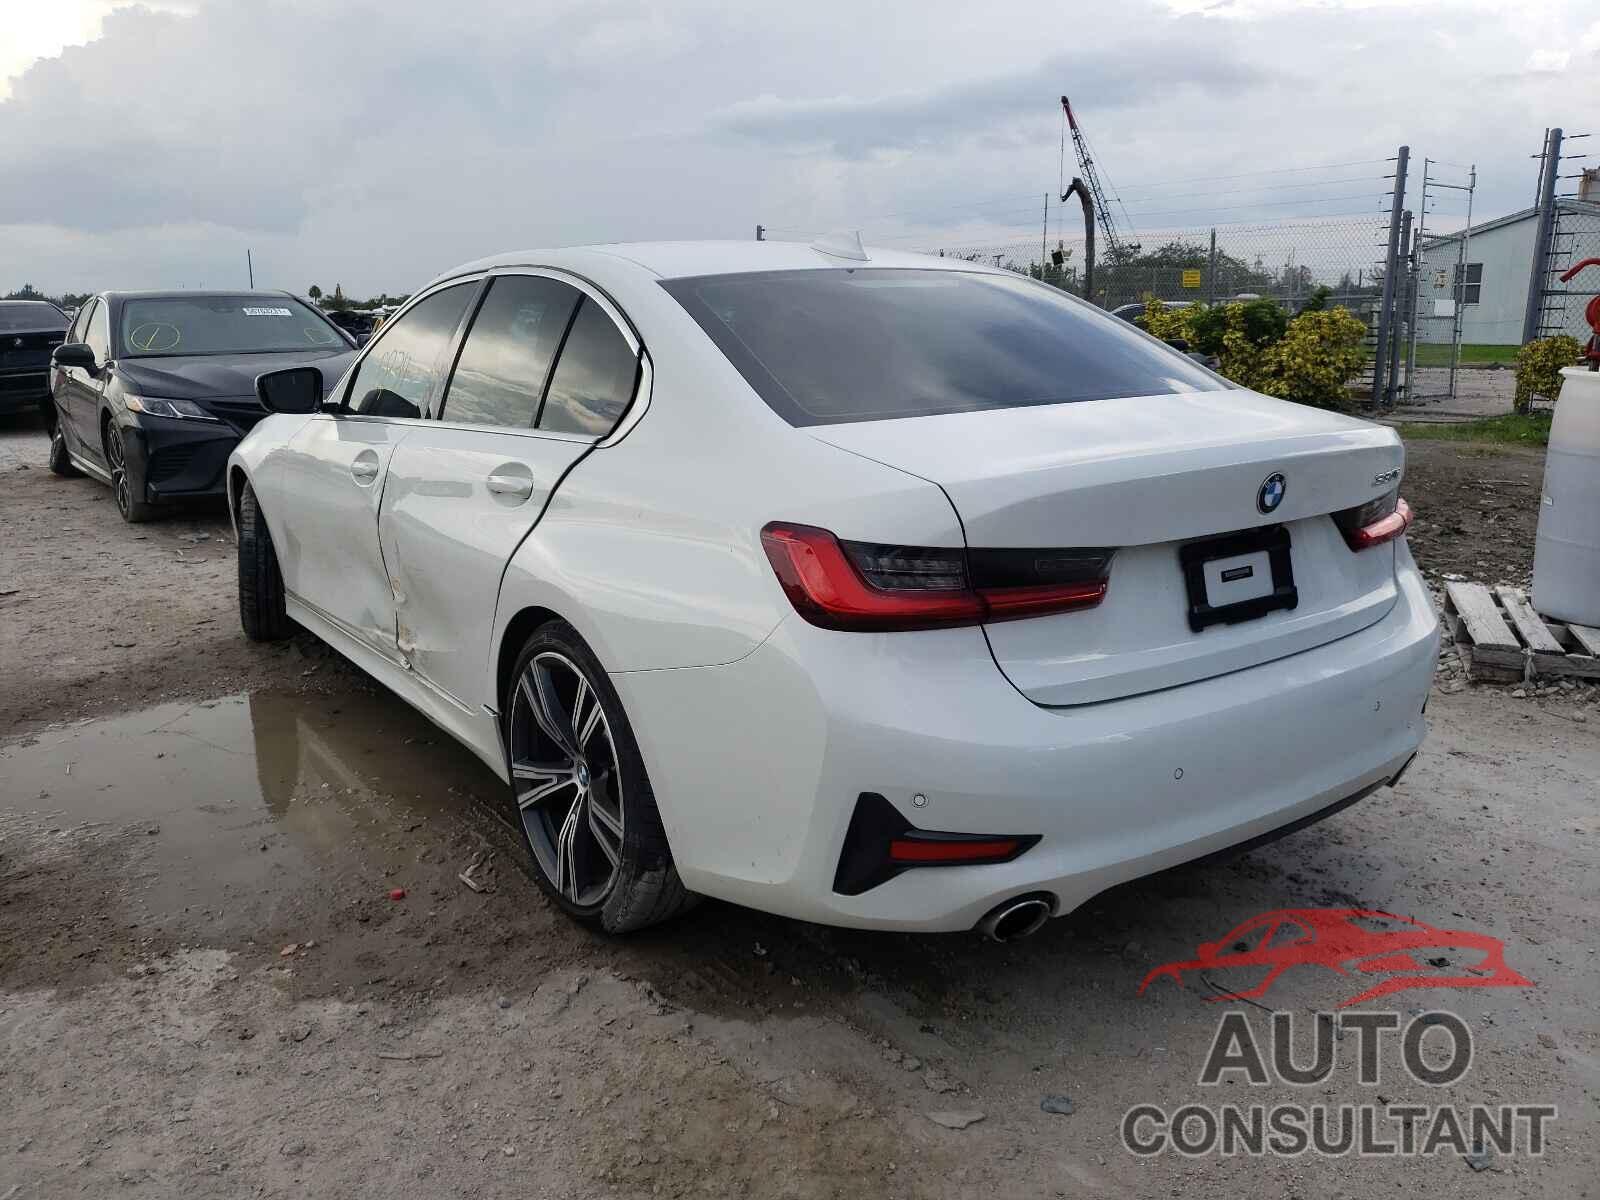 BMW 3 SERIES 2020 - 3MW5R1J00L8B19951